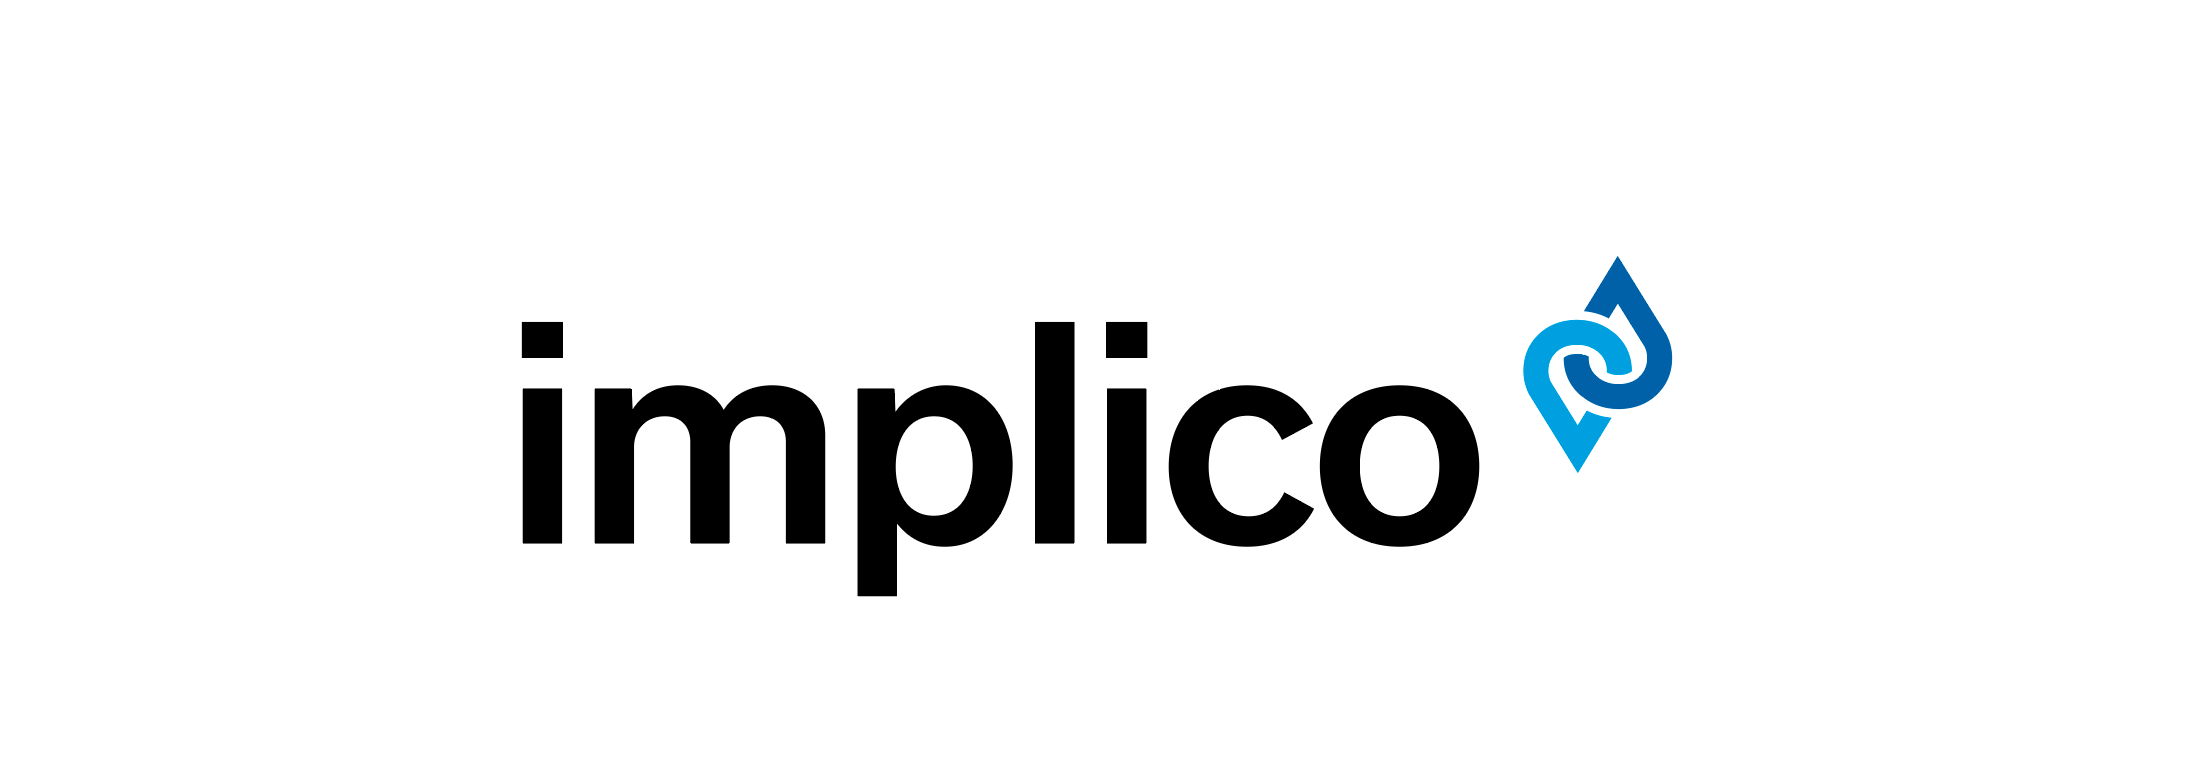 Implico Name + Logo